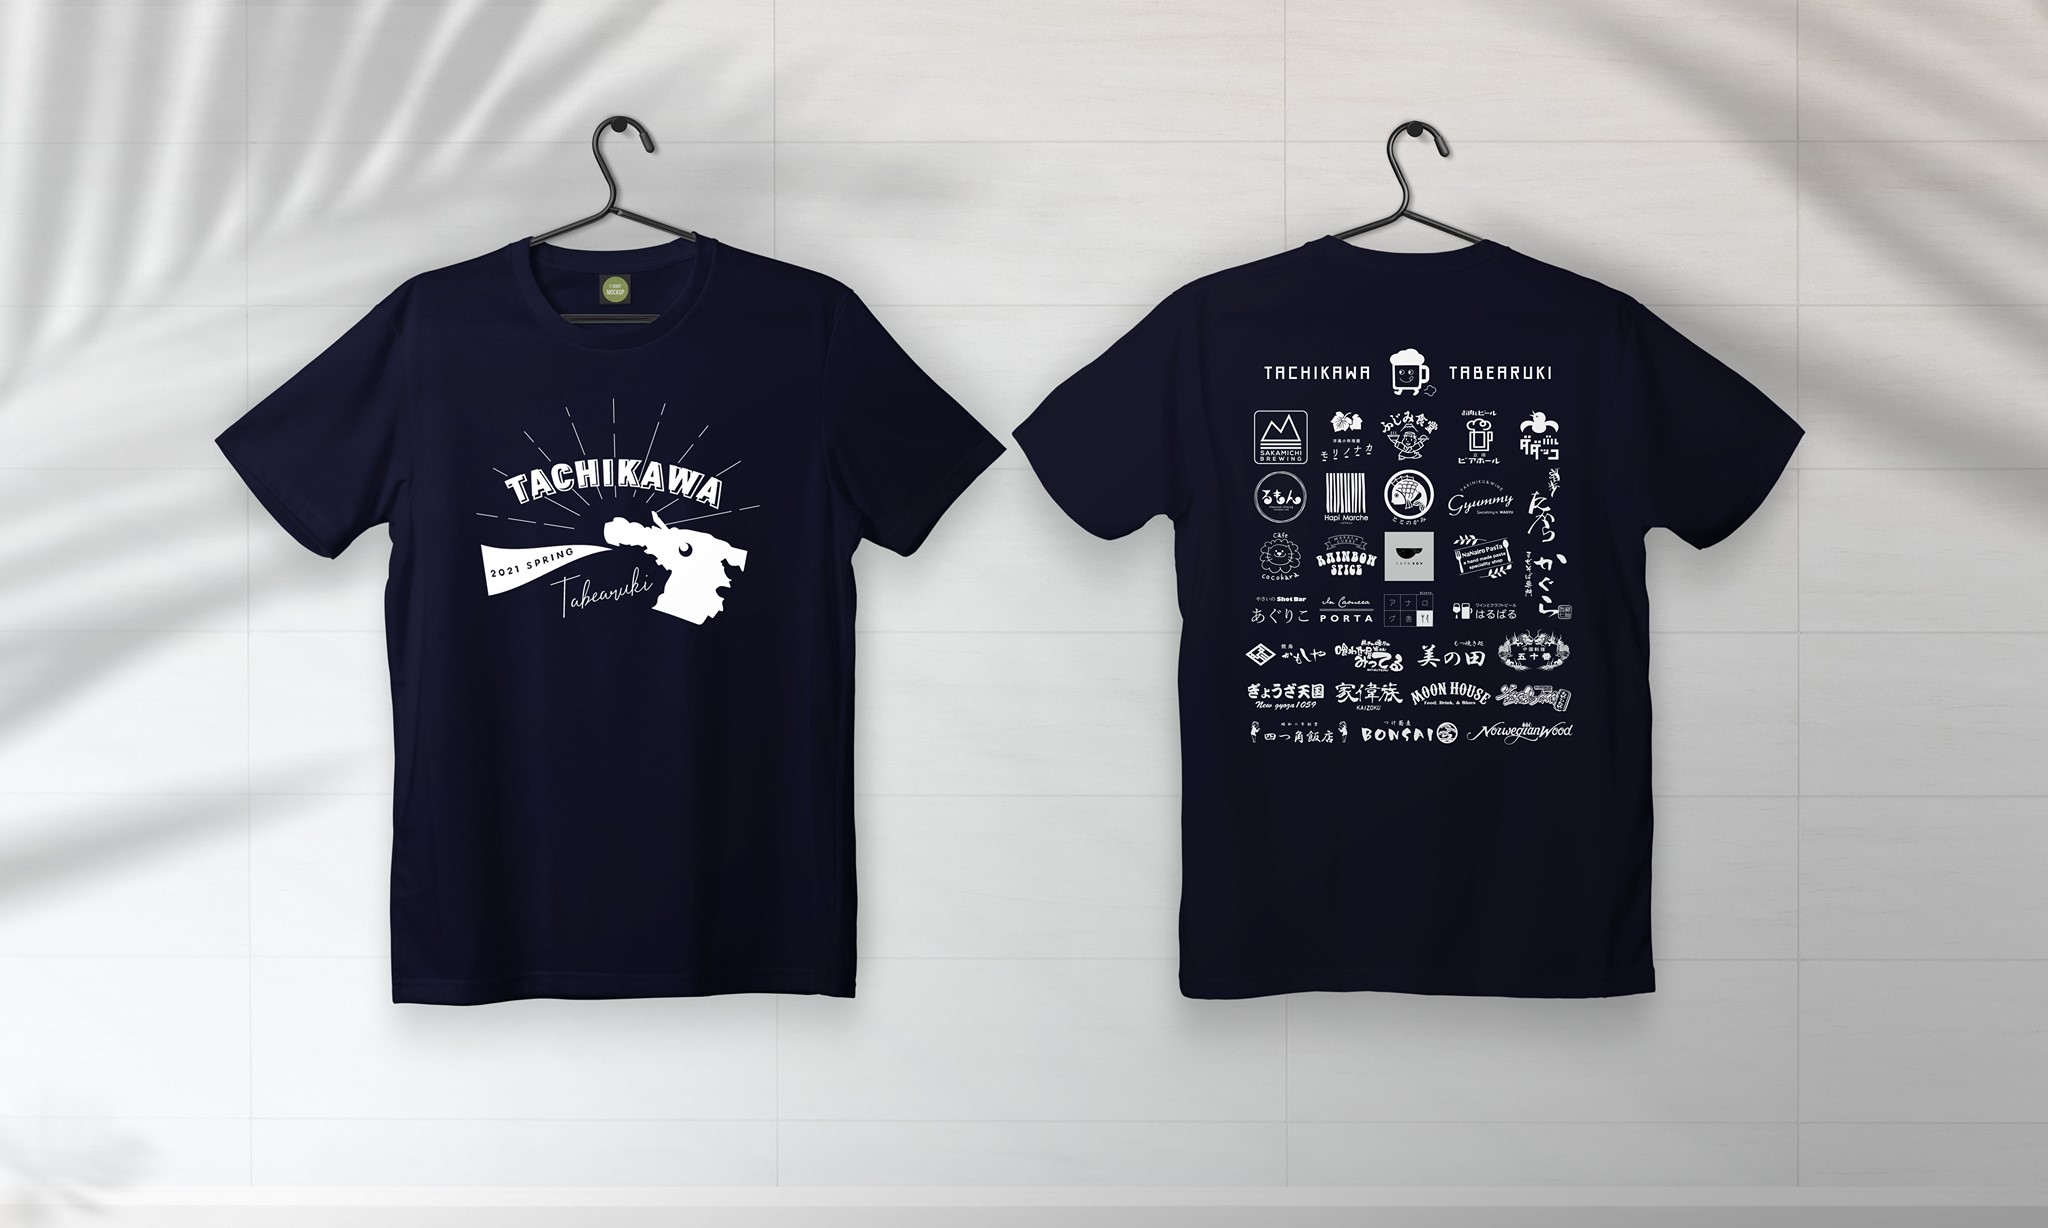 オリジナルTシャツで立川を応援！「立川食べ歩き隊」の飲食応援企画がスタートしています！